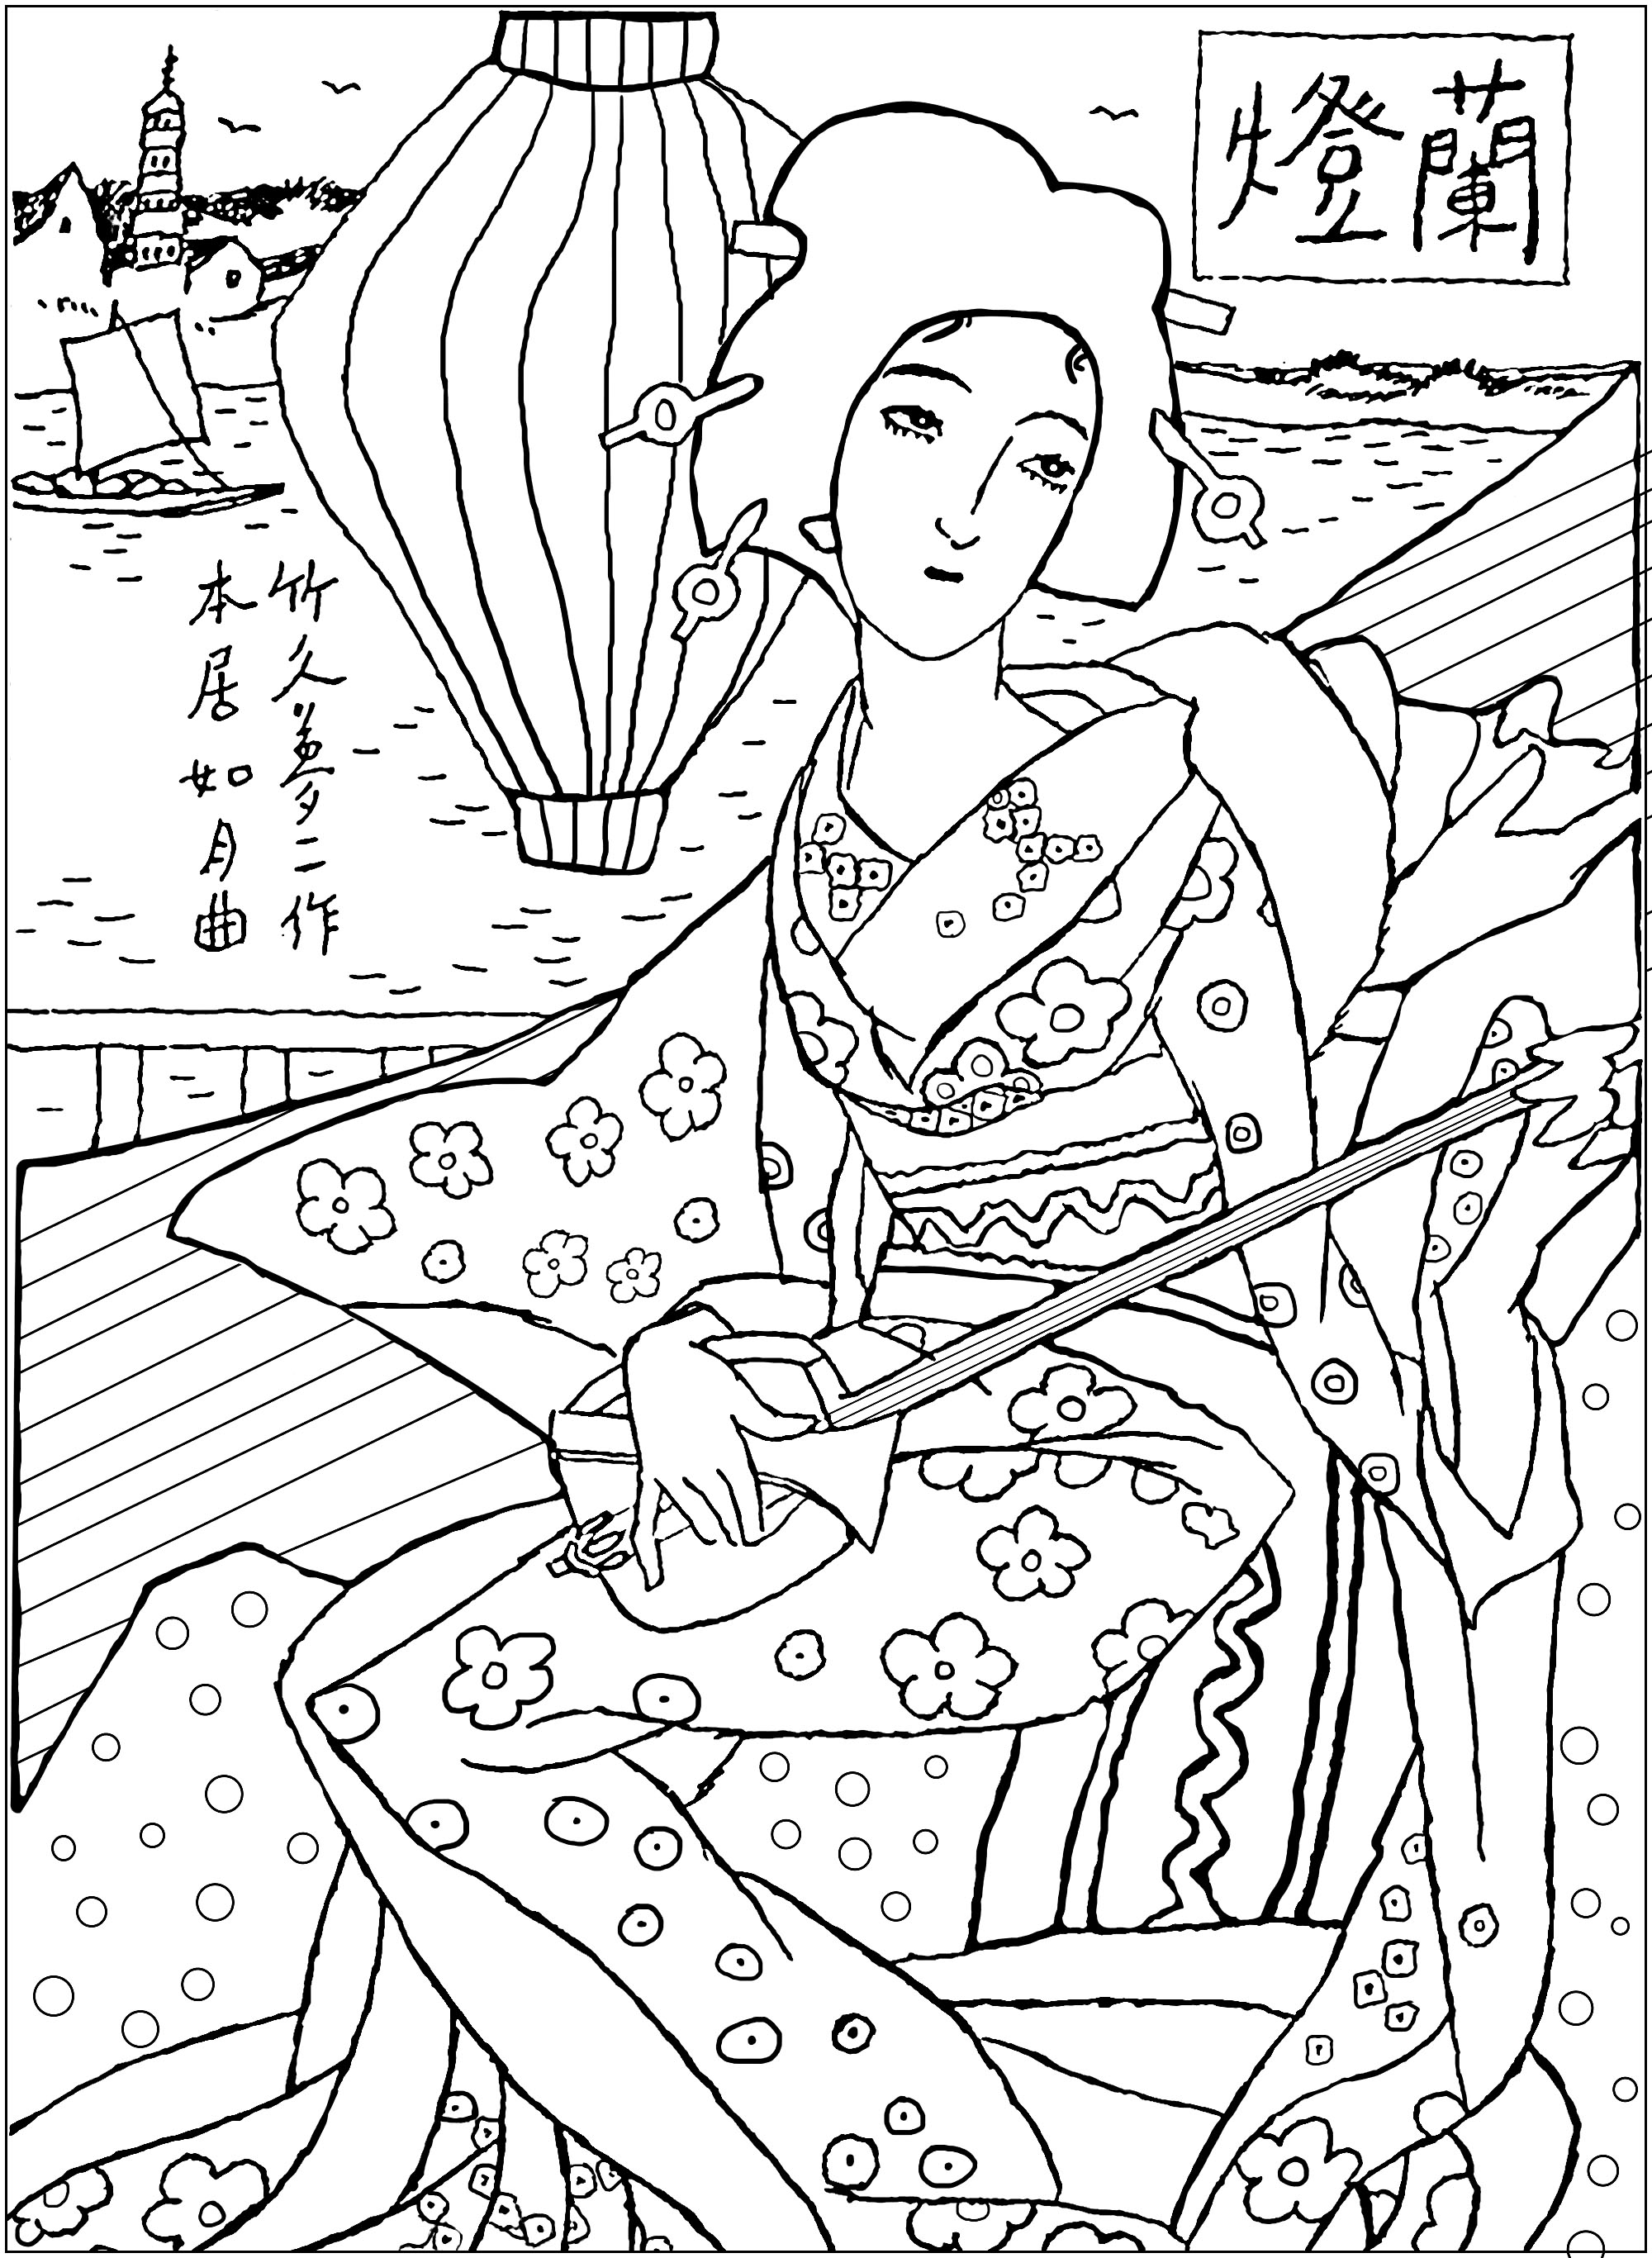 Dibujo exclusivo inspirado en un cuadro con una Geisha japonesa